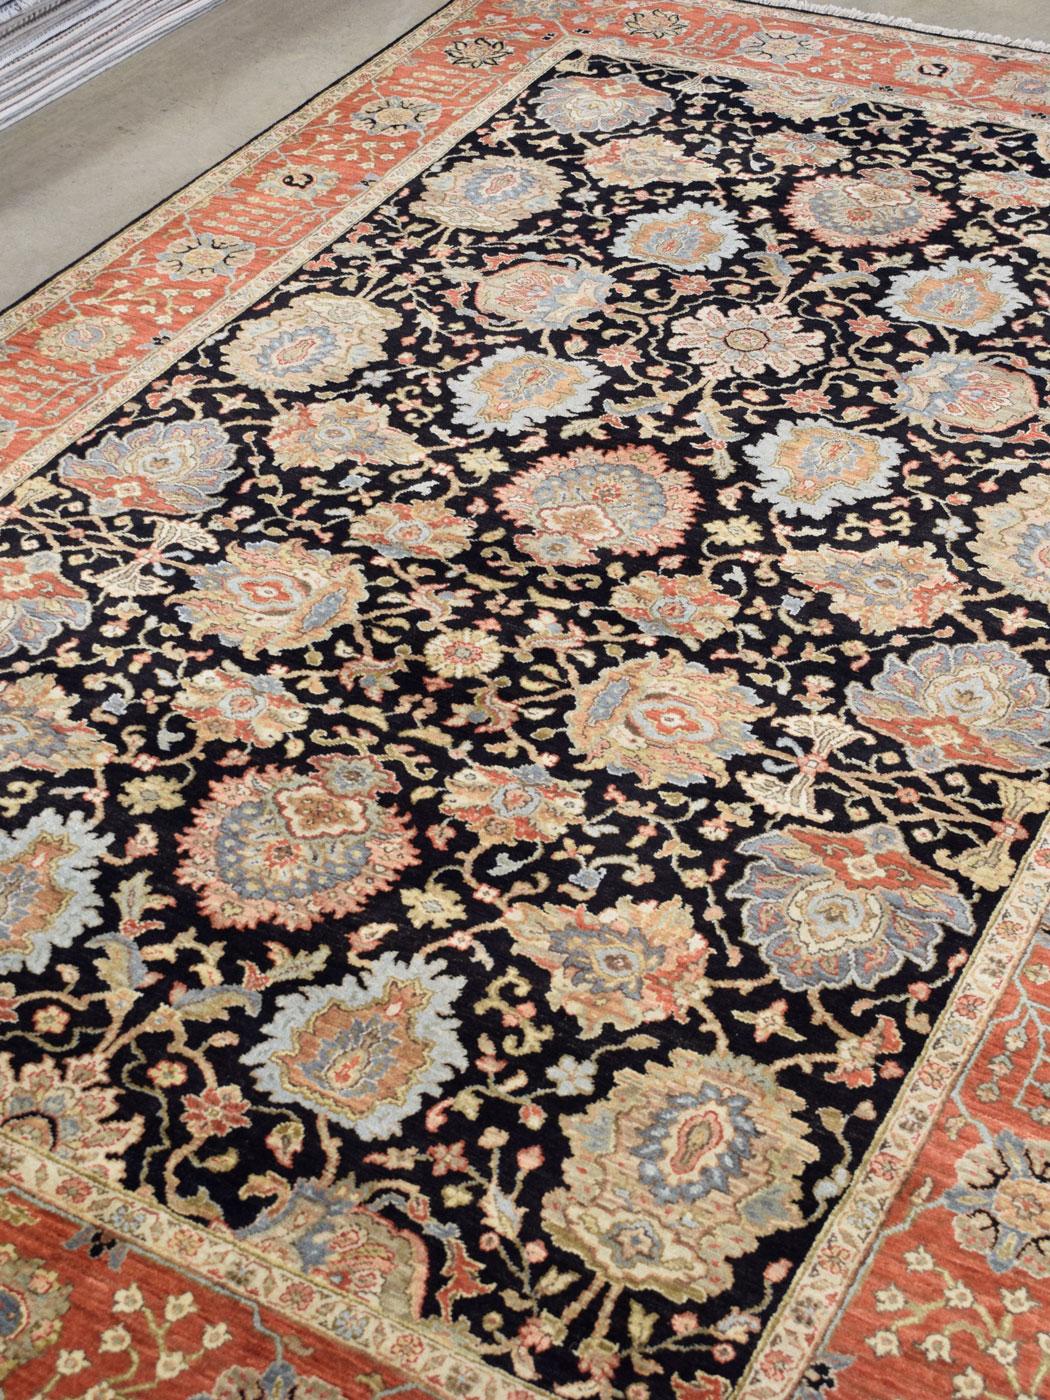 Dieser warme, dramatische und angenehm einladende Agra-Teppich misst 6' x 9'1